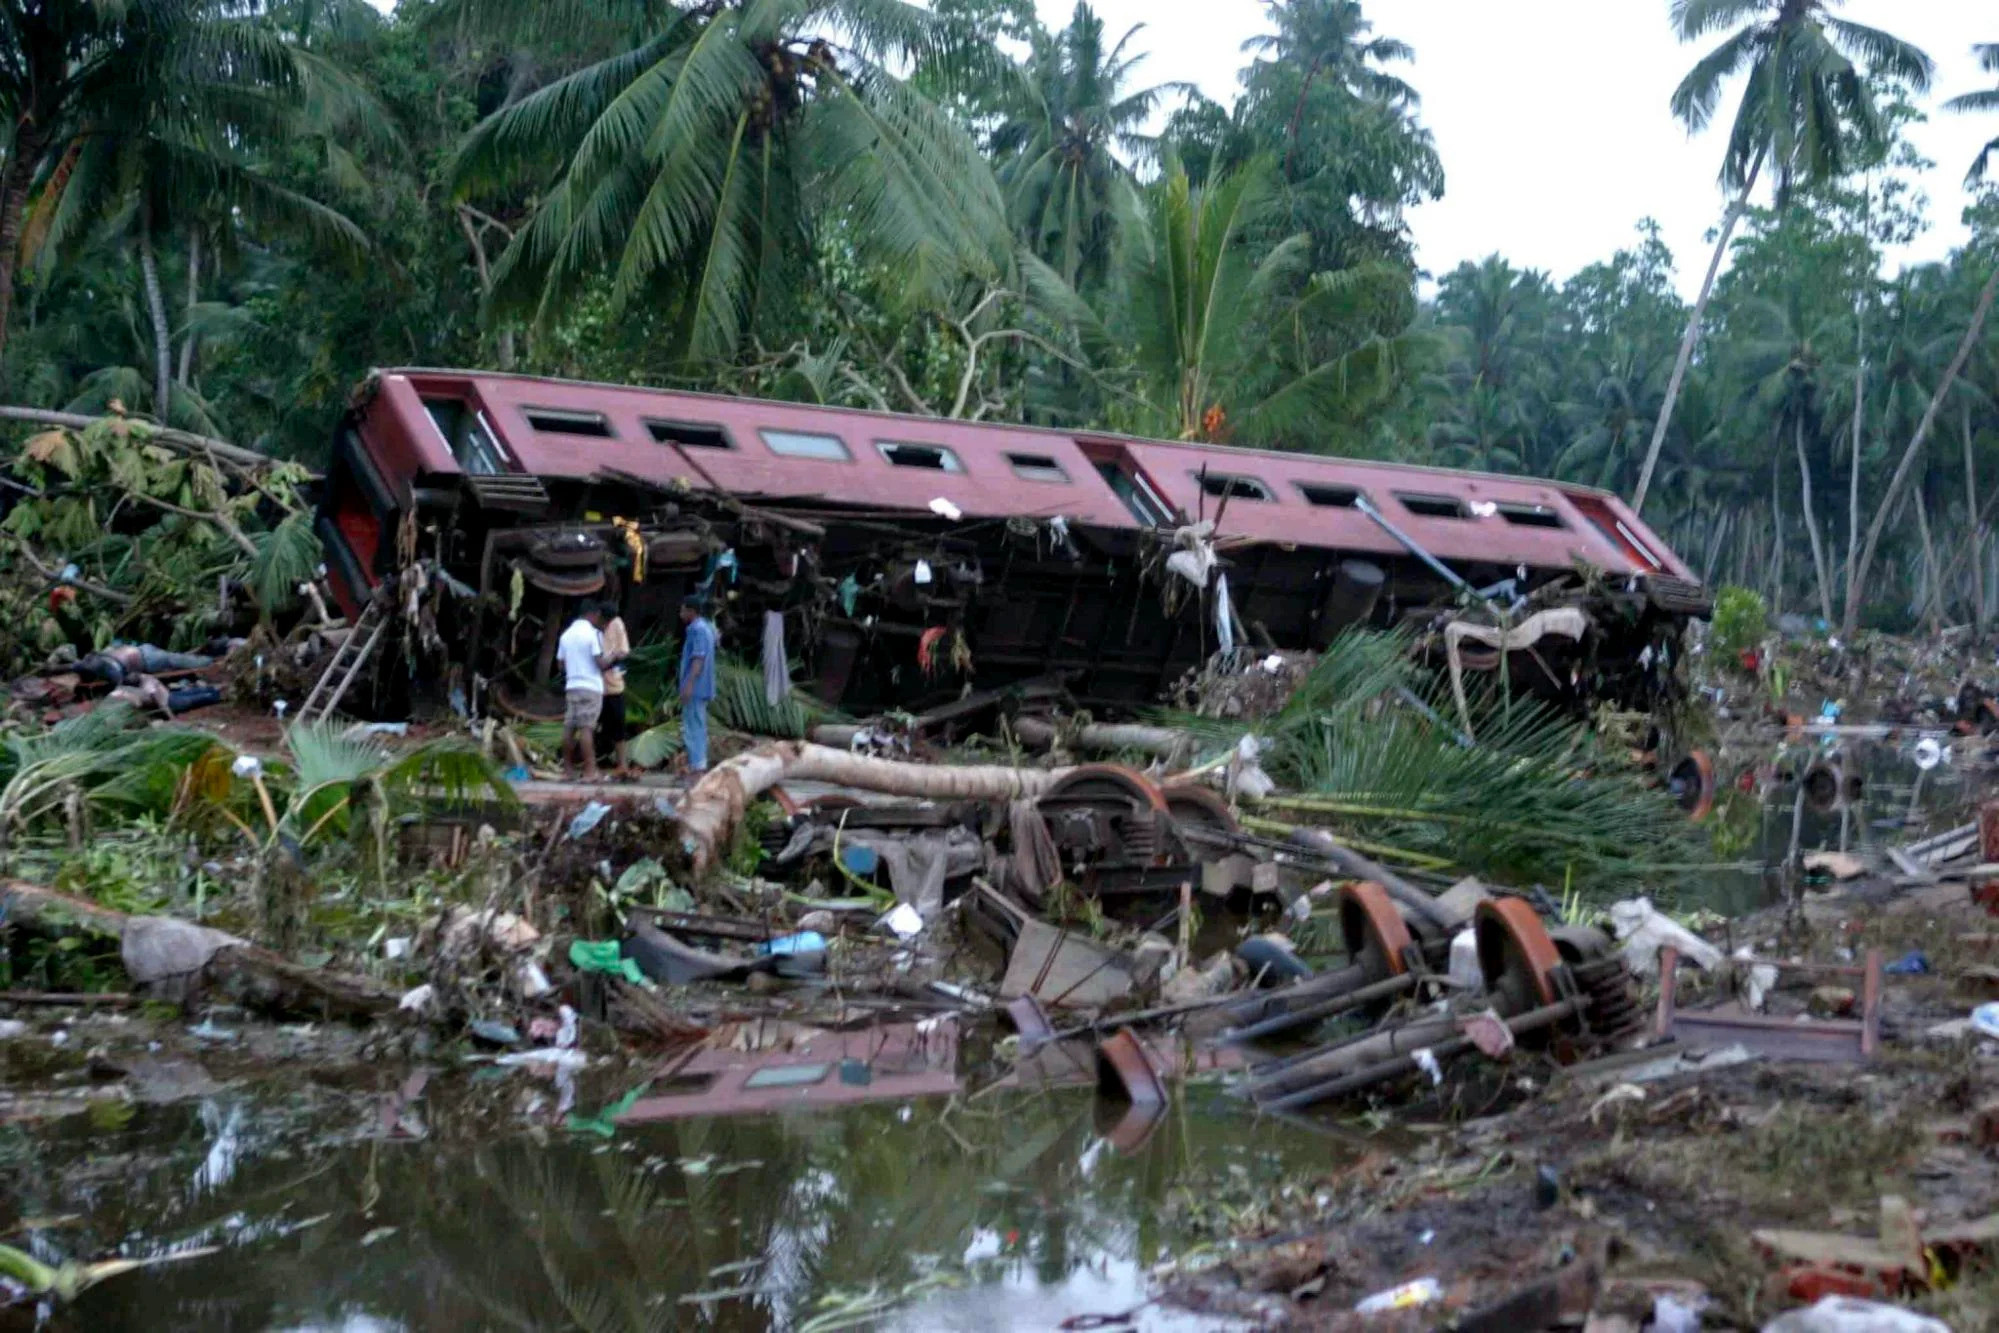 24 декабря 2004. Железнодорожная катастрофа и ЦУНАМИ В Шри-Ланке, 2004 год (1700+ жертв). Железнодорожная катастрофа и ЦУНАМИ В Шри-Ланке, 2004 год. ЖД катастрофа Шри Ланка 2004. ЦУНАМИ 2004 года Шри Ланка.